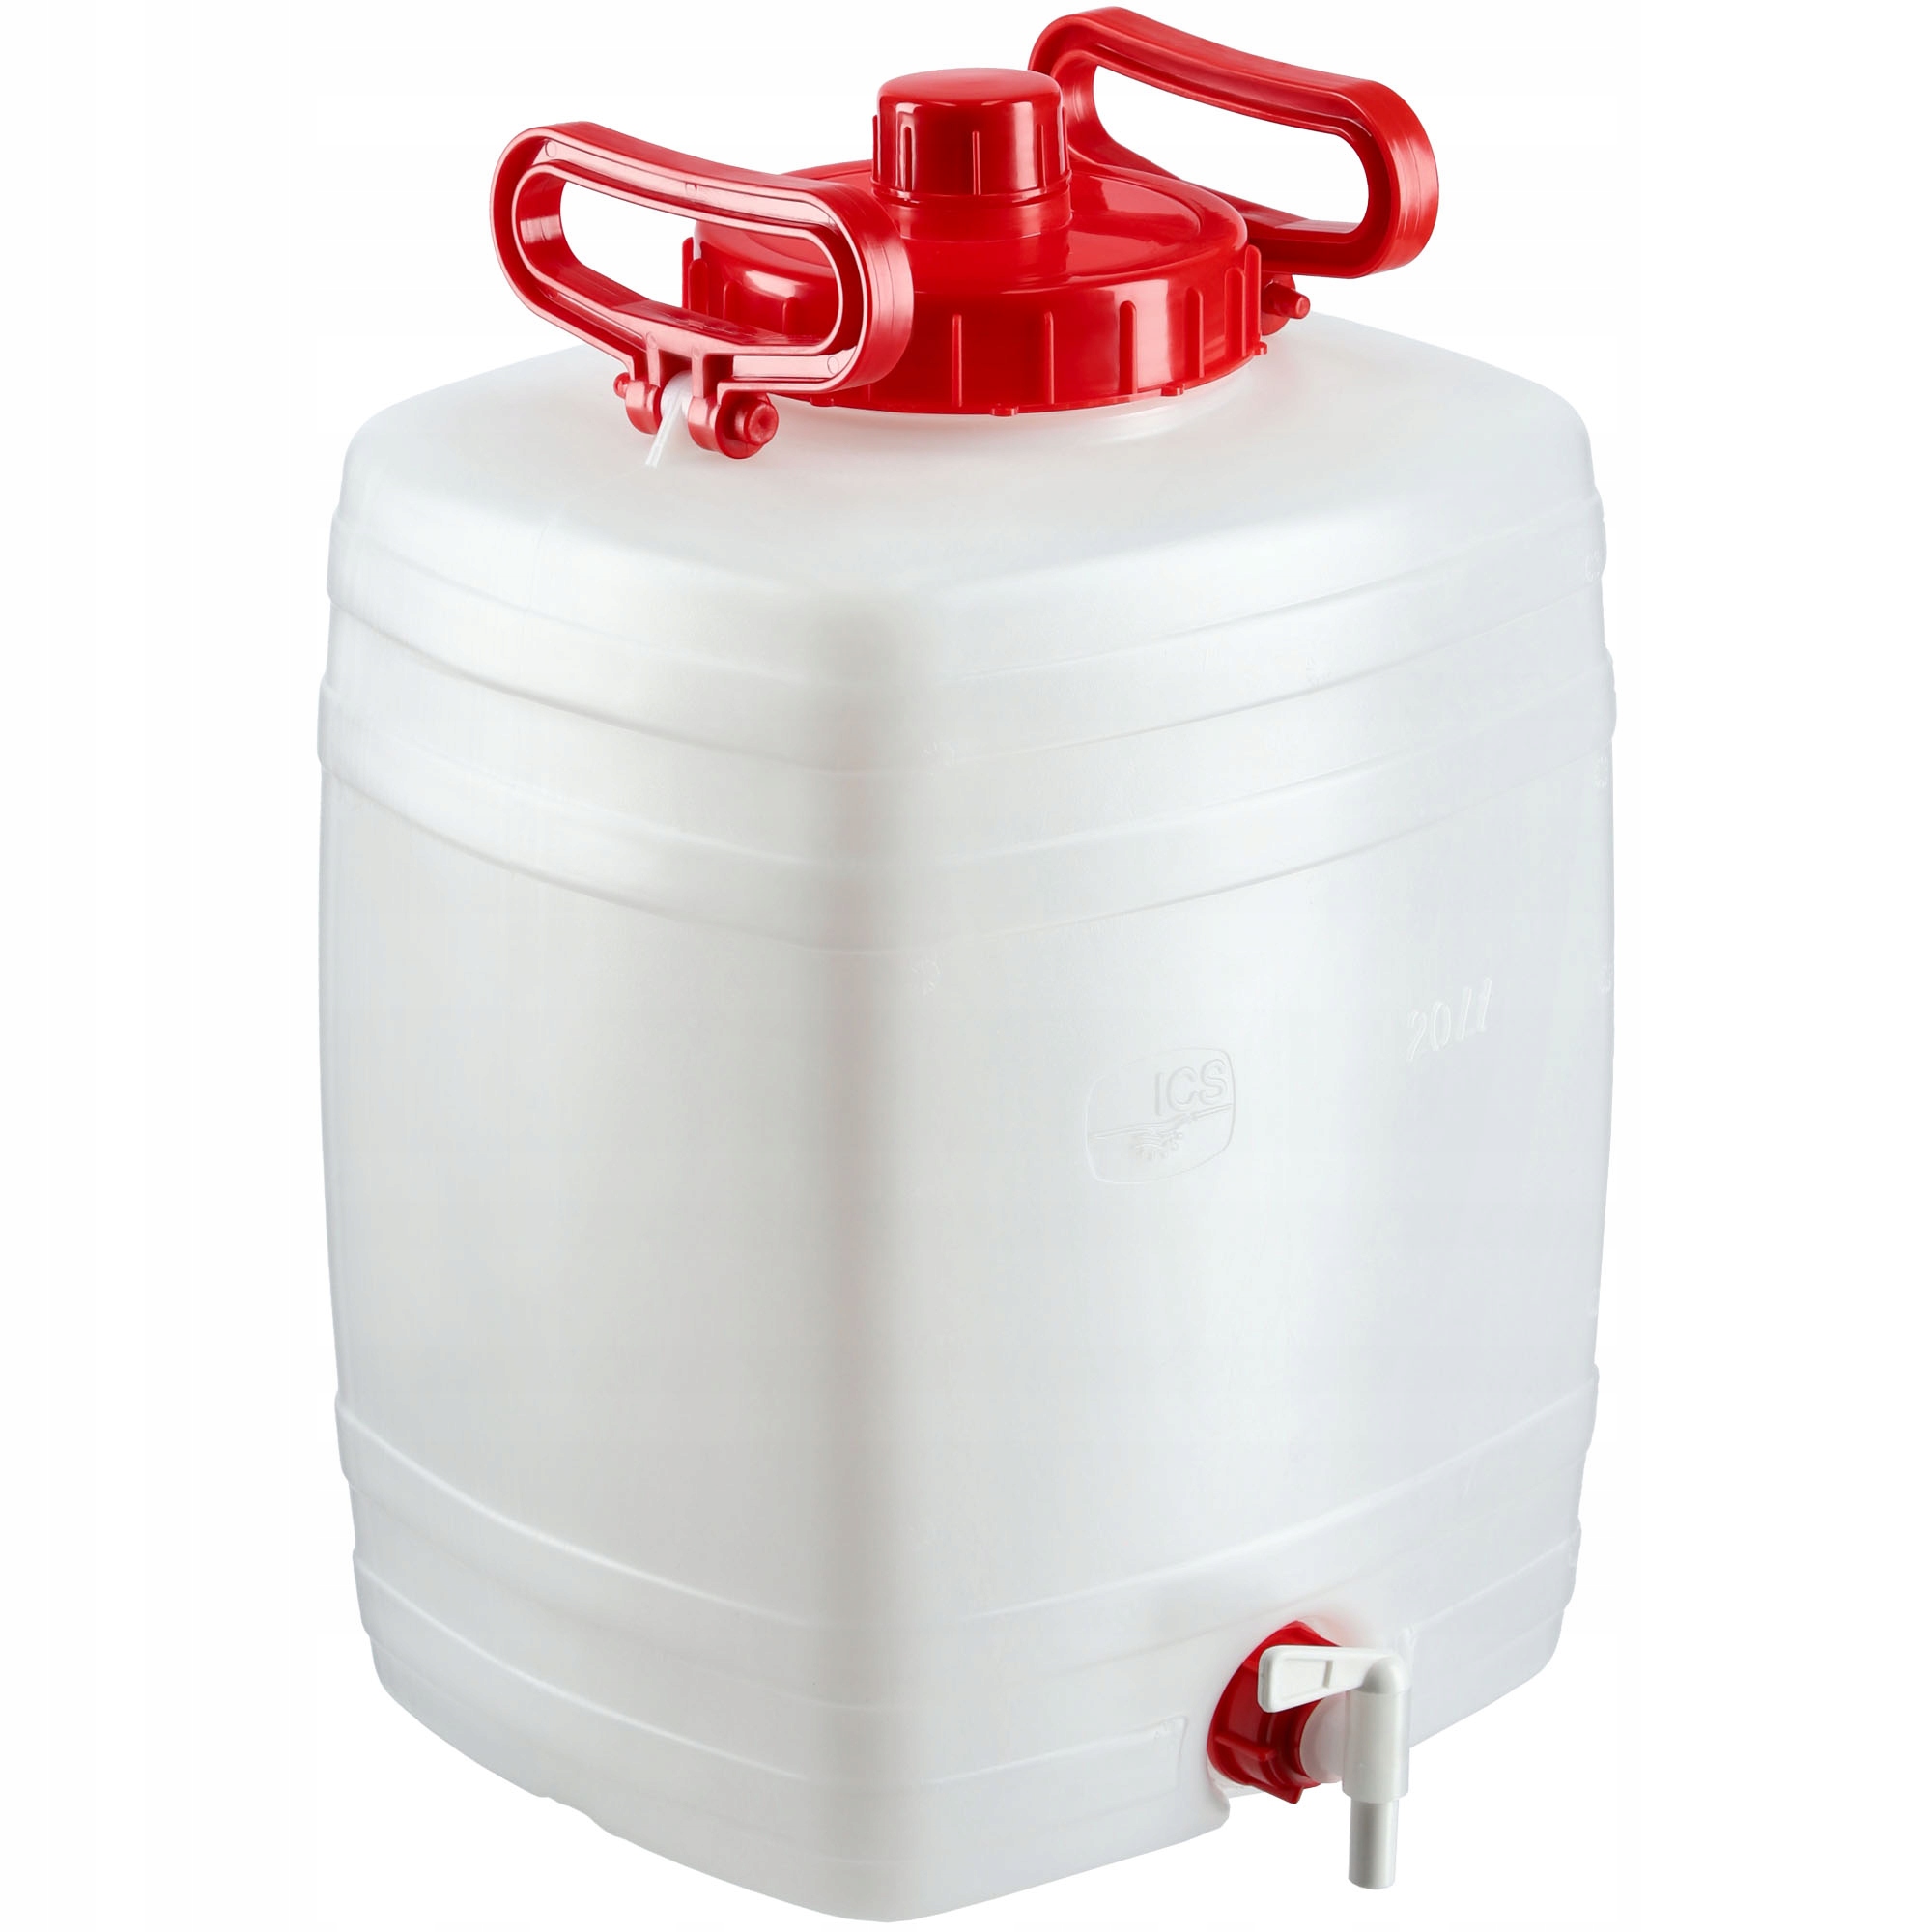 KADAX Wasserkanister, aus Kunststoff, Trinkwasserkanister, mit Hahn, 20L, Wei